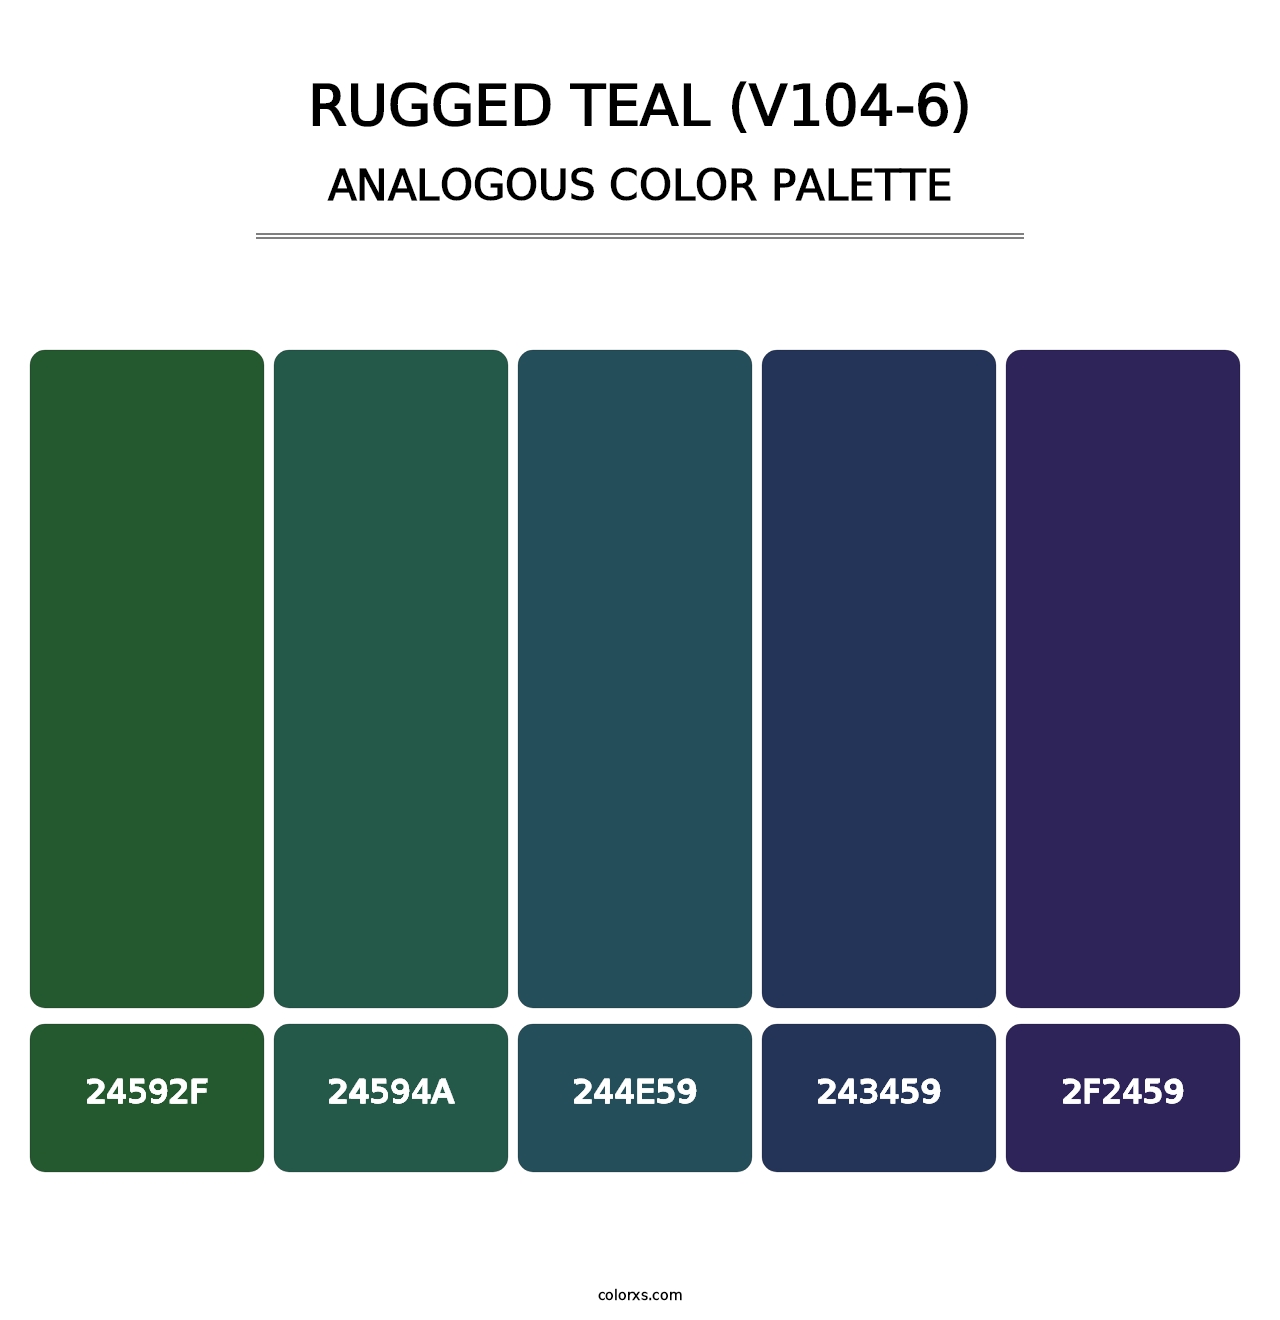 Rugged Teal (V104-6) - Analogous Color Palette